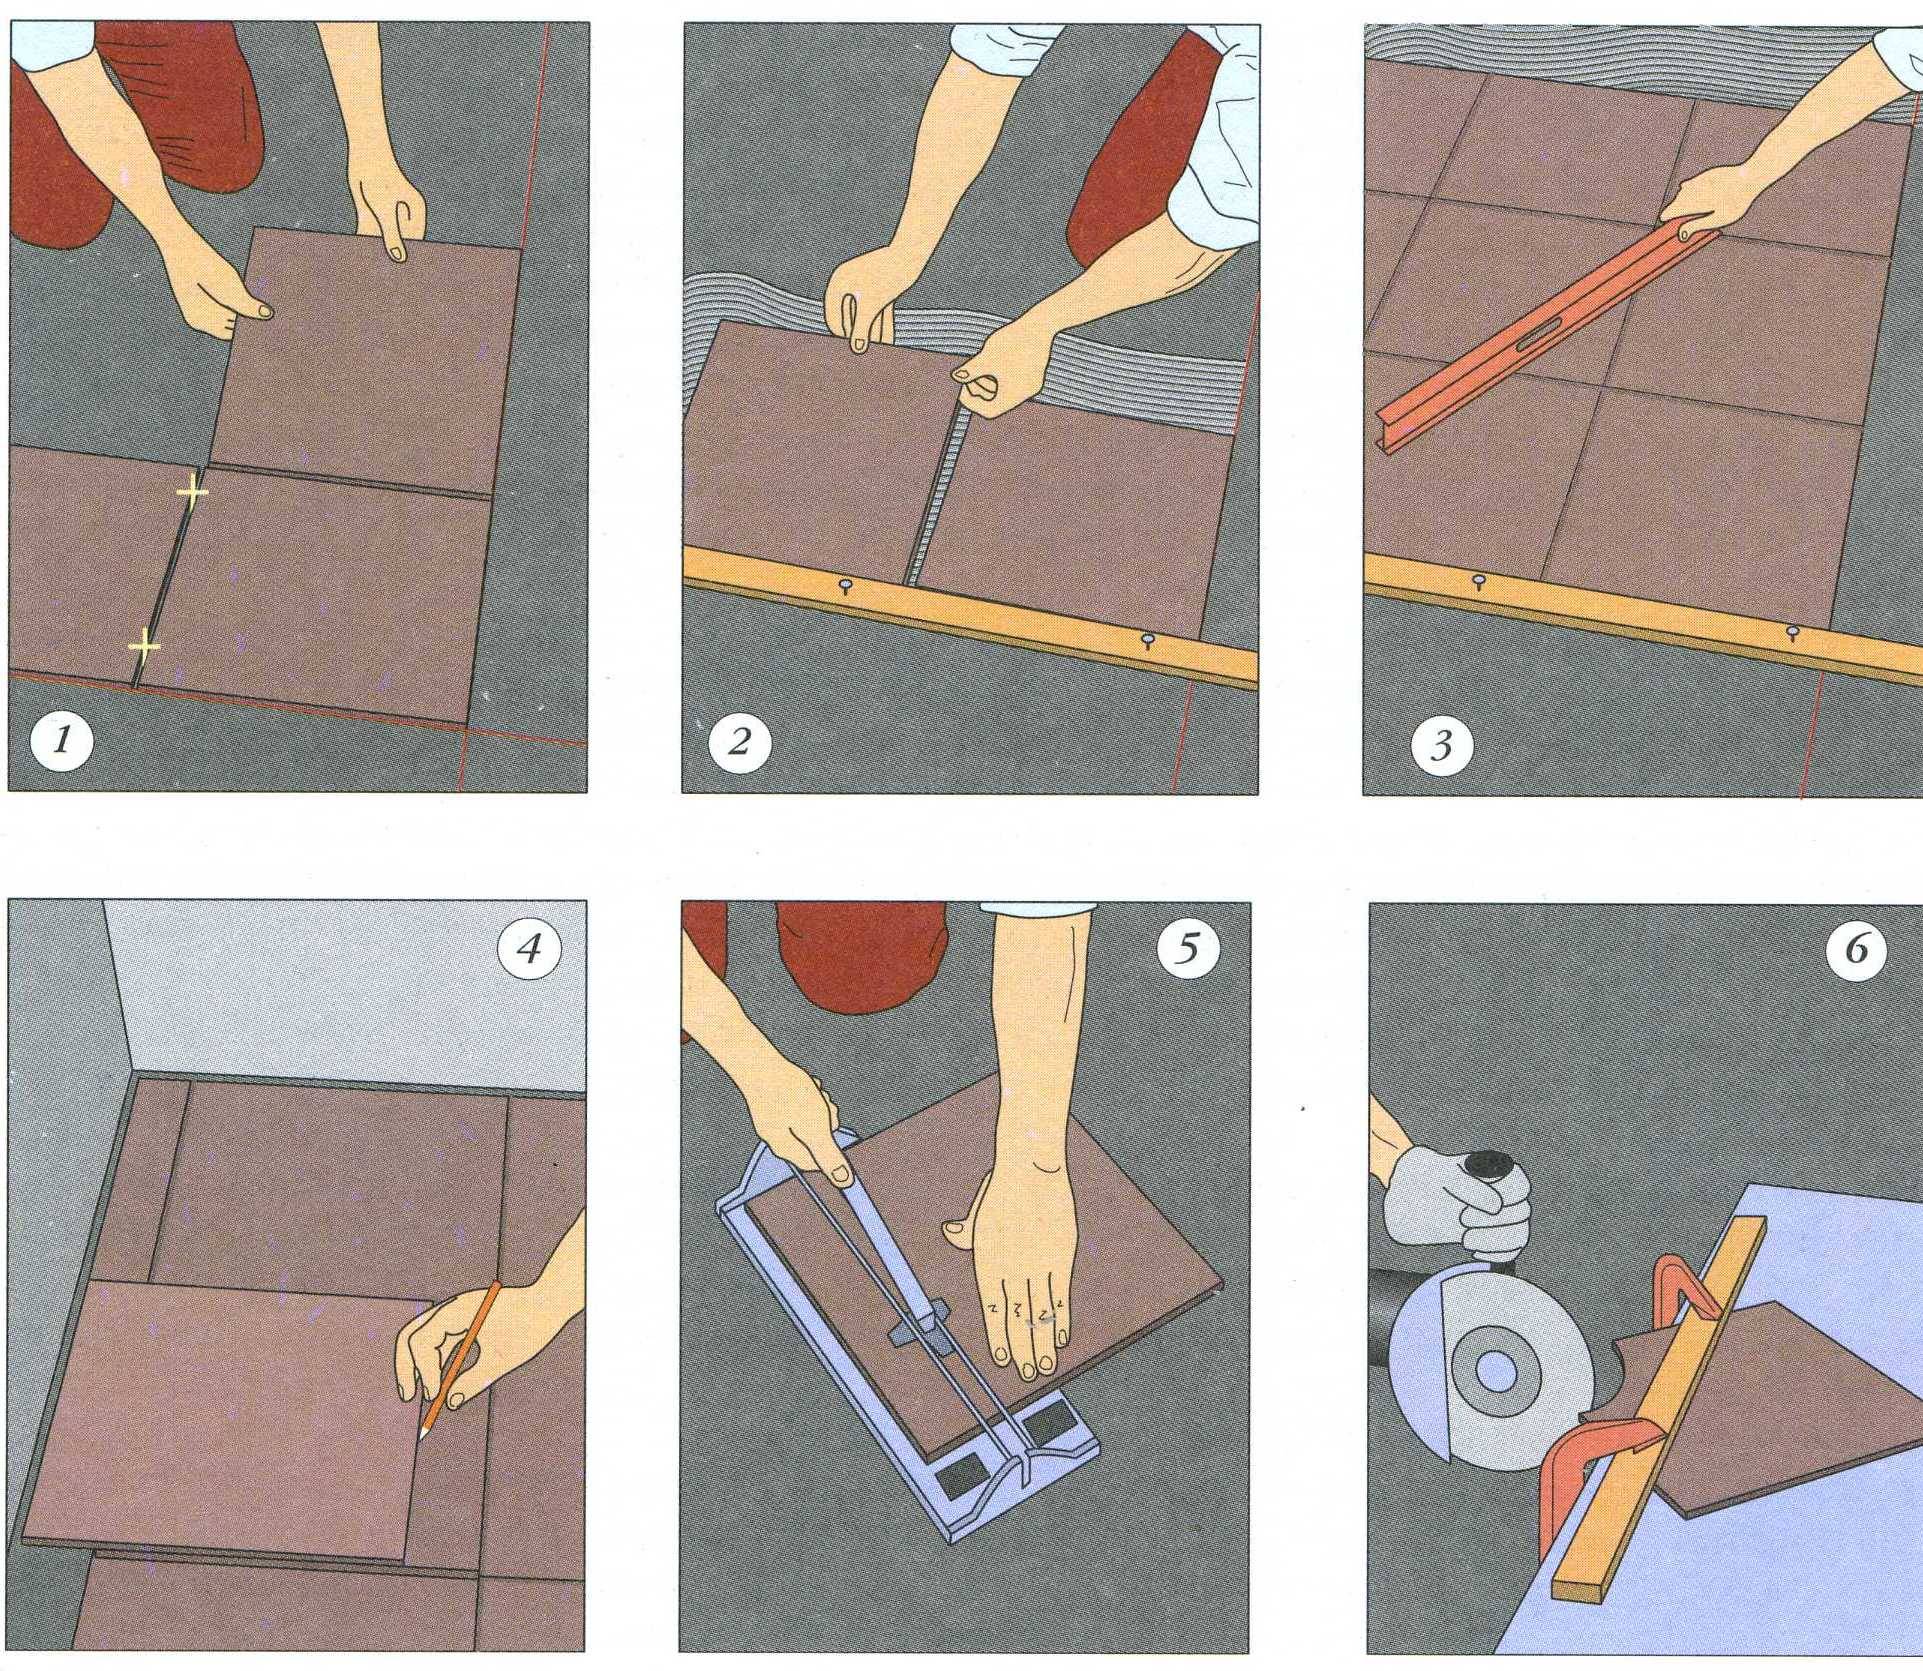 Ремонт на раз-два: как правильно класть плитку на пол, чтобы не переделывать работу заново